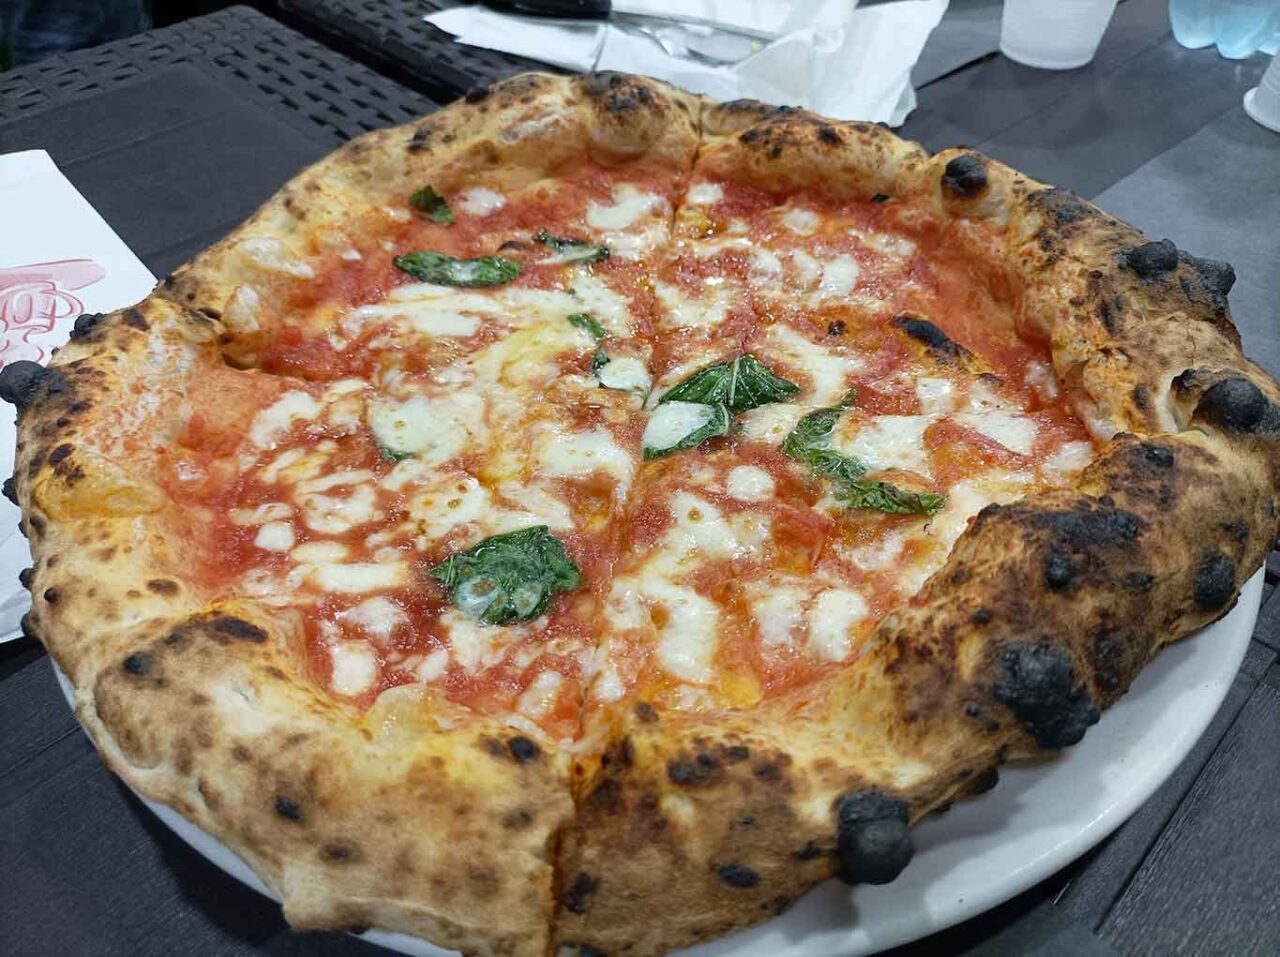 migliori pizze margherita di Napoli e Provincia: A cantinell ro carichiell